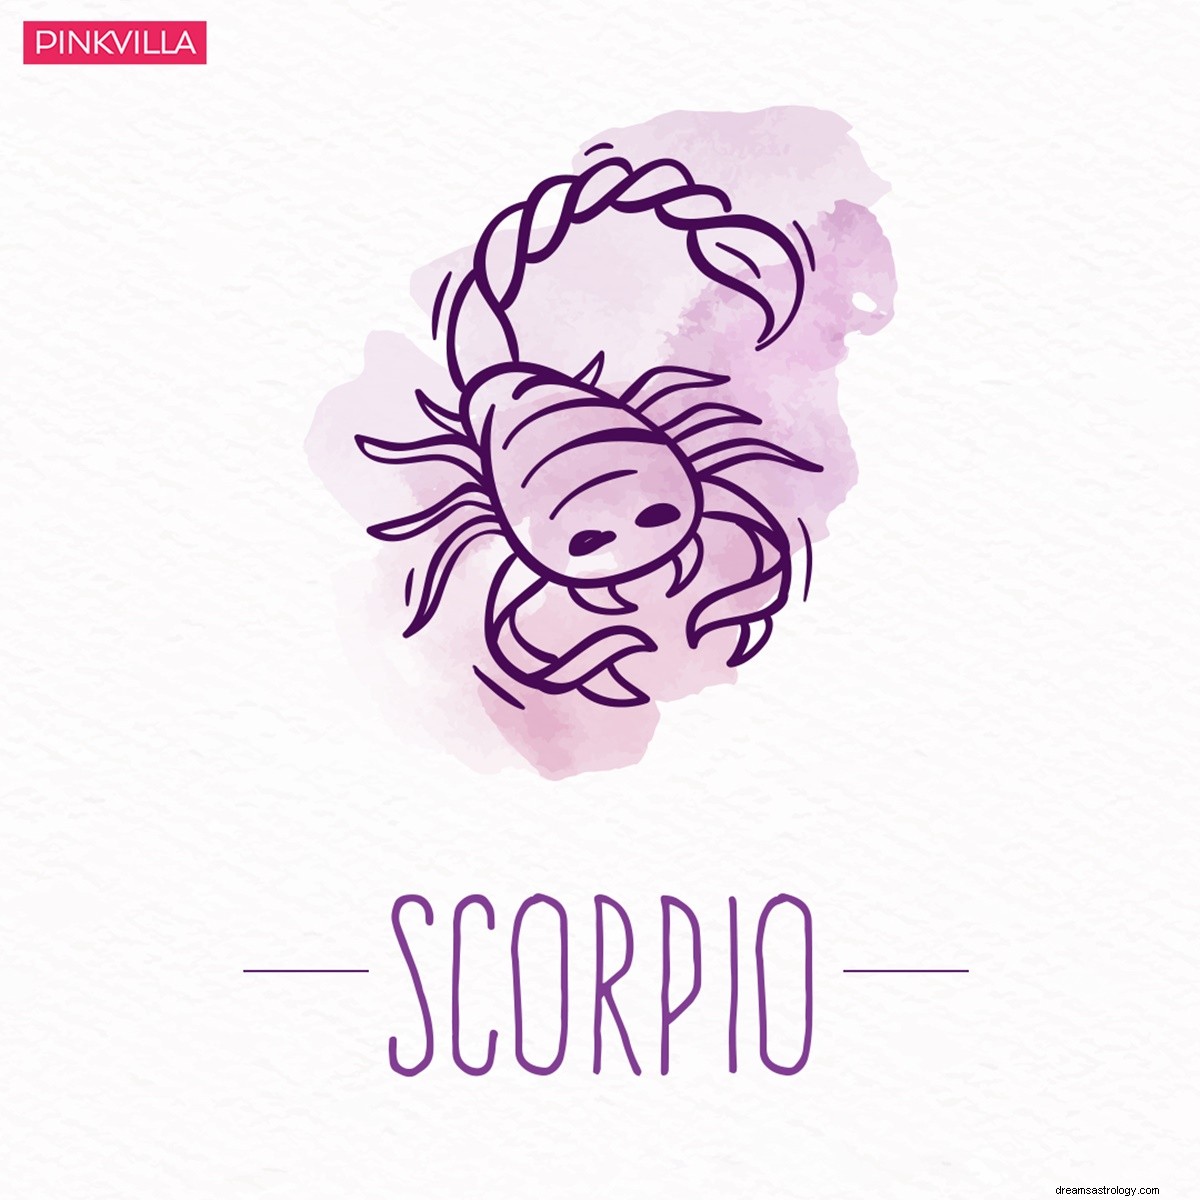 Virgo a Escorpio:4 signos del zodiaco que tienden a tener aventuras amorosas secretas después del matrimonio 